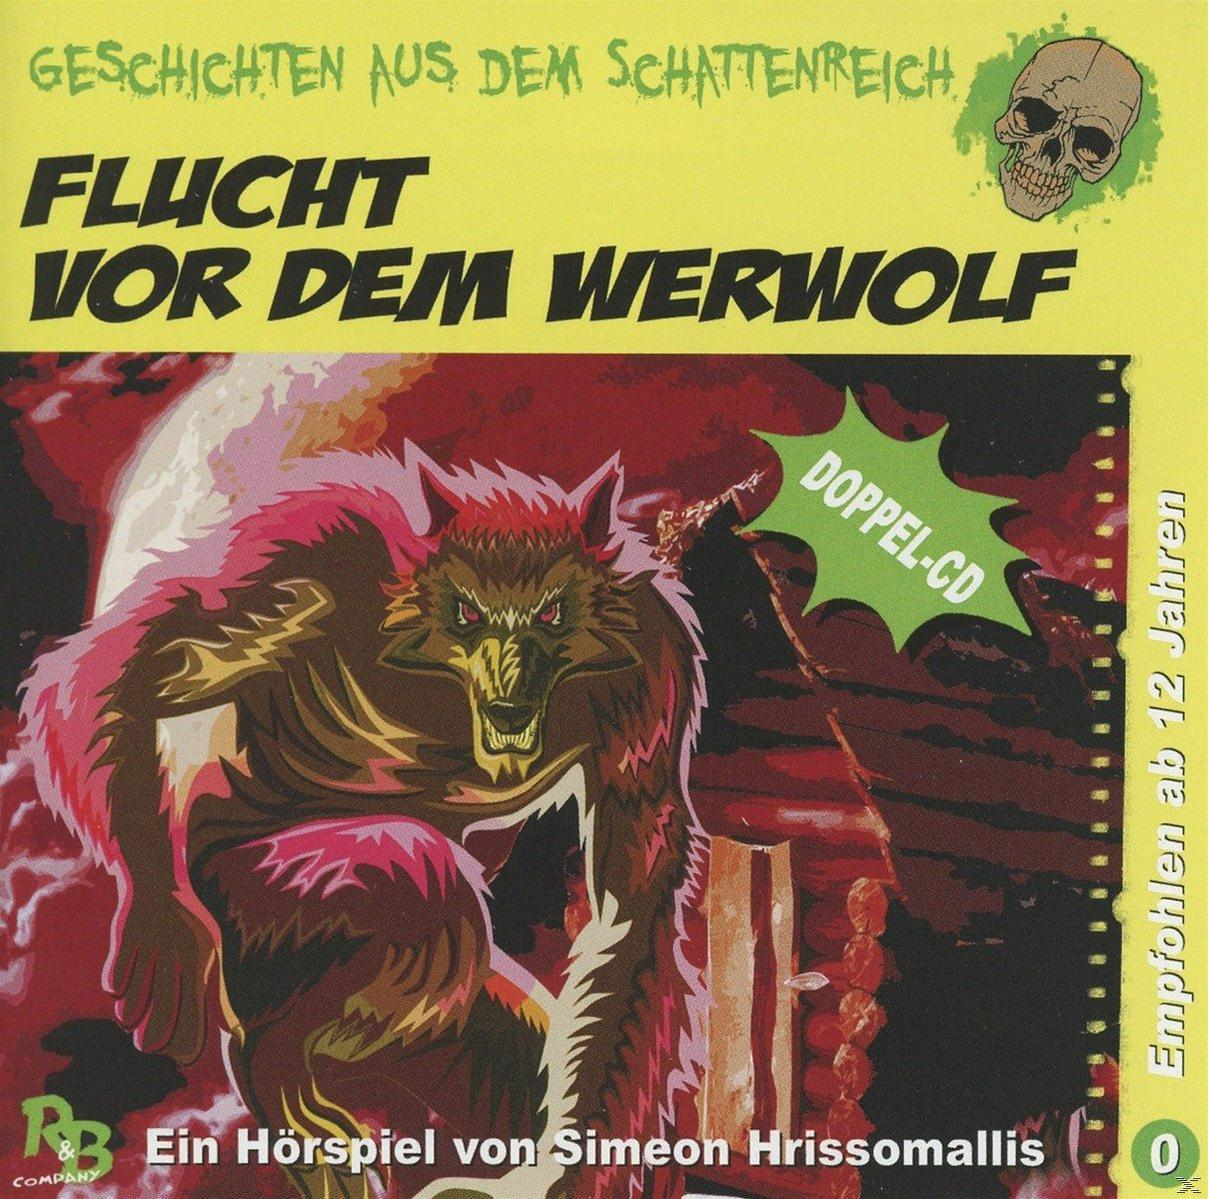 Aus vor Schattenre Dem - Speci Geschichten (CD) Werwolf dem Flucht - û